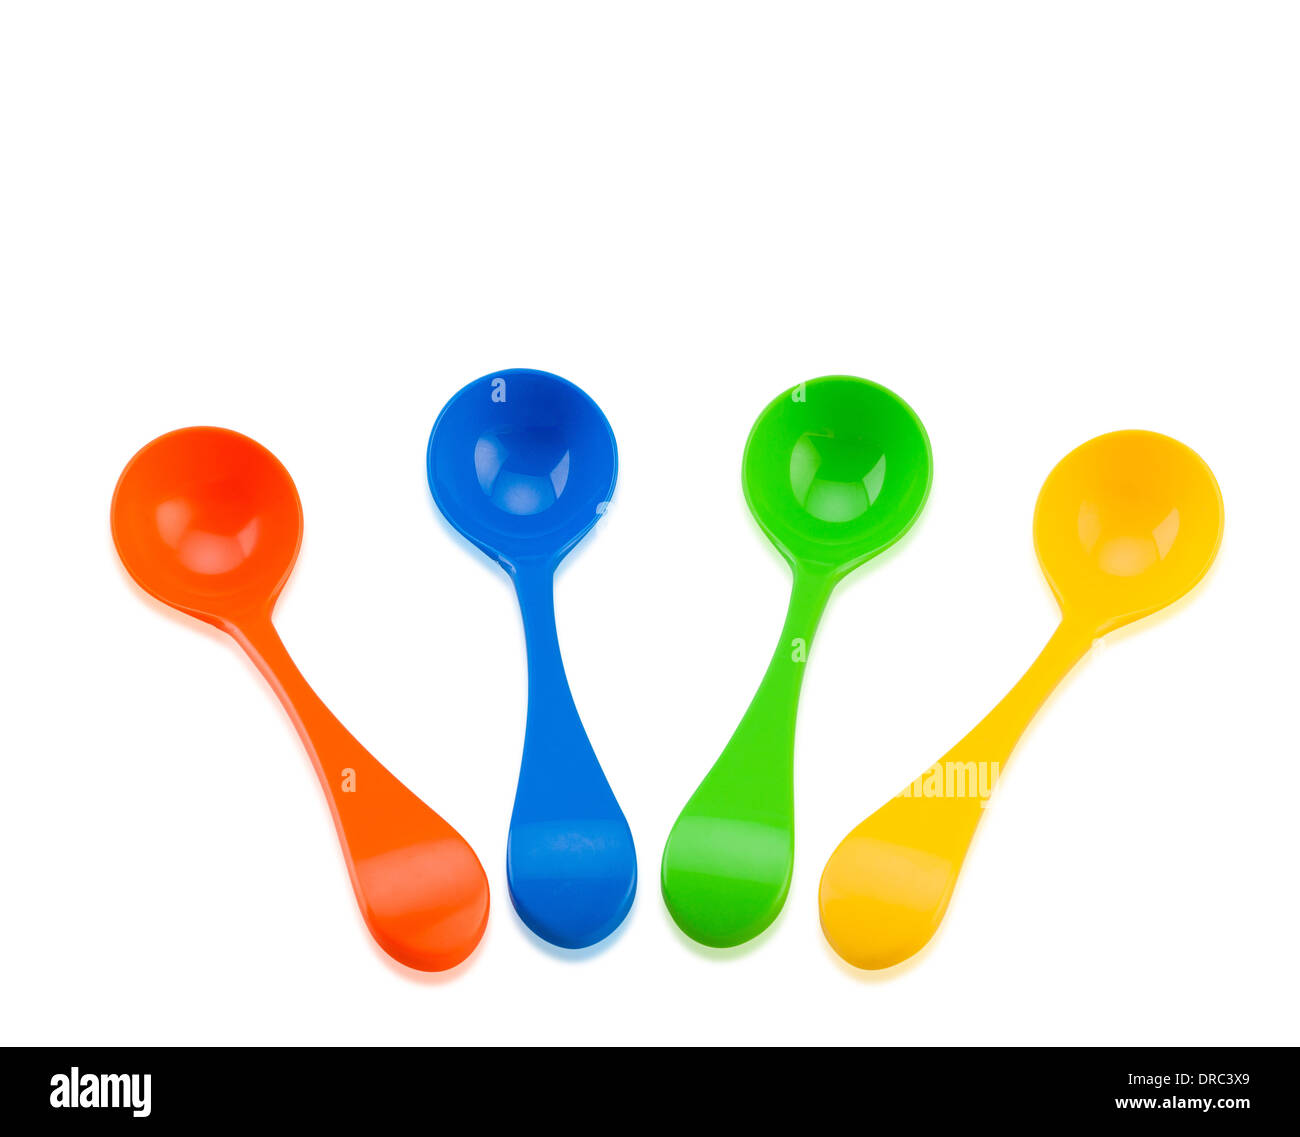 Cuillères jouet colorées isolé sur fond blanc Banque D'Images